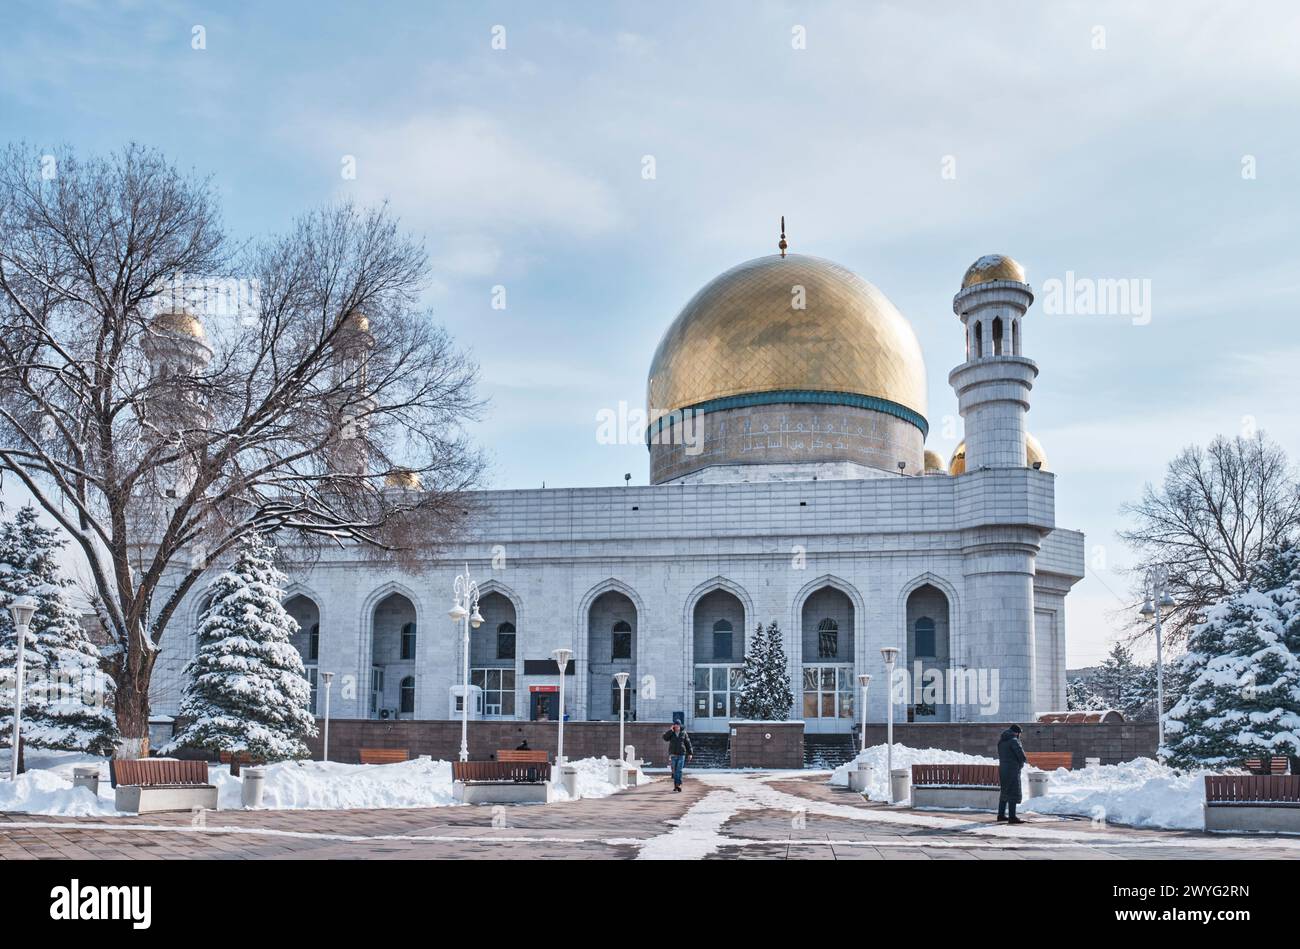 Almaty, Kazakhstan - 15 mars 2024 : immense mosquée centrale d'Almaty, construite en marbre blanc en 1999, avec dômes dorés, calligraphie céramique, imposant minar Banque D'Images